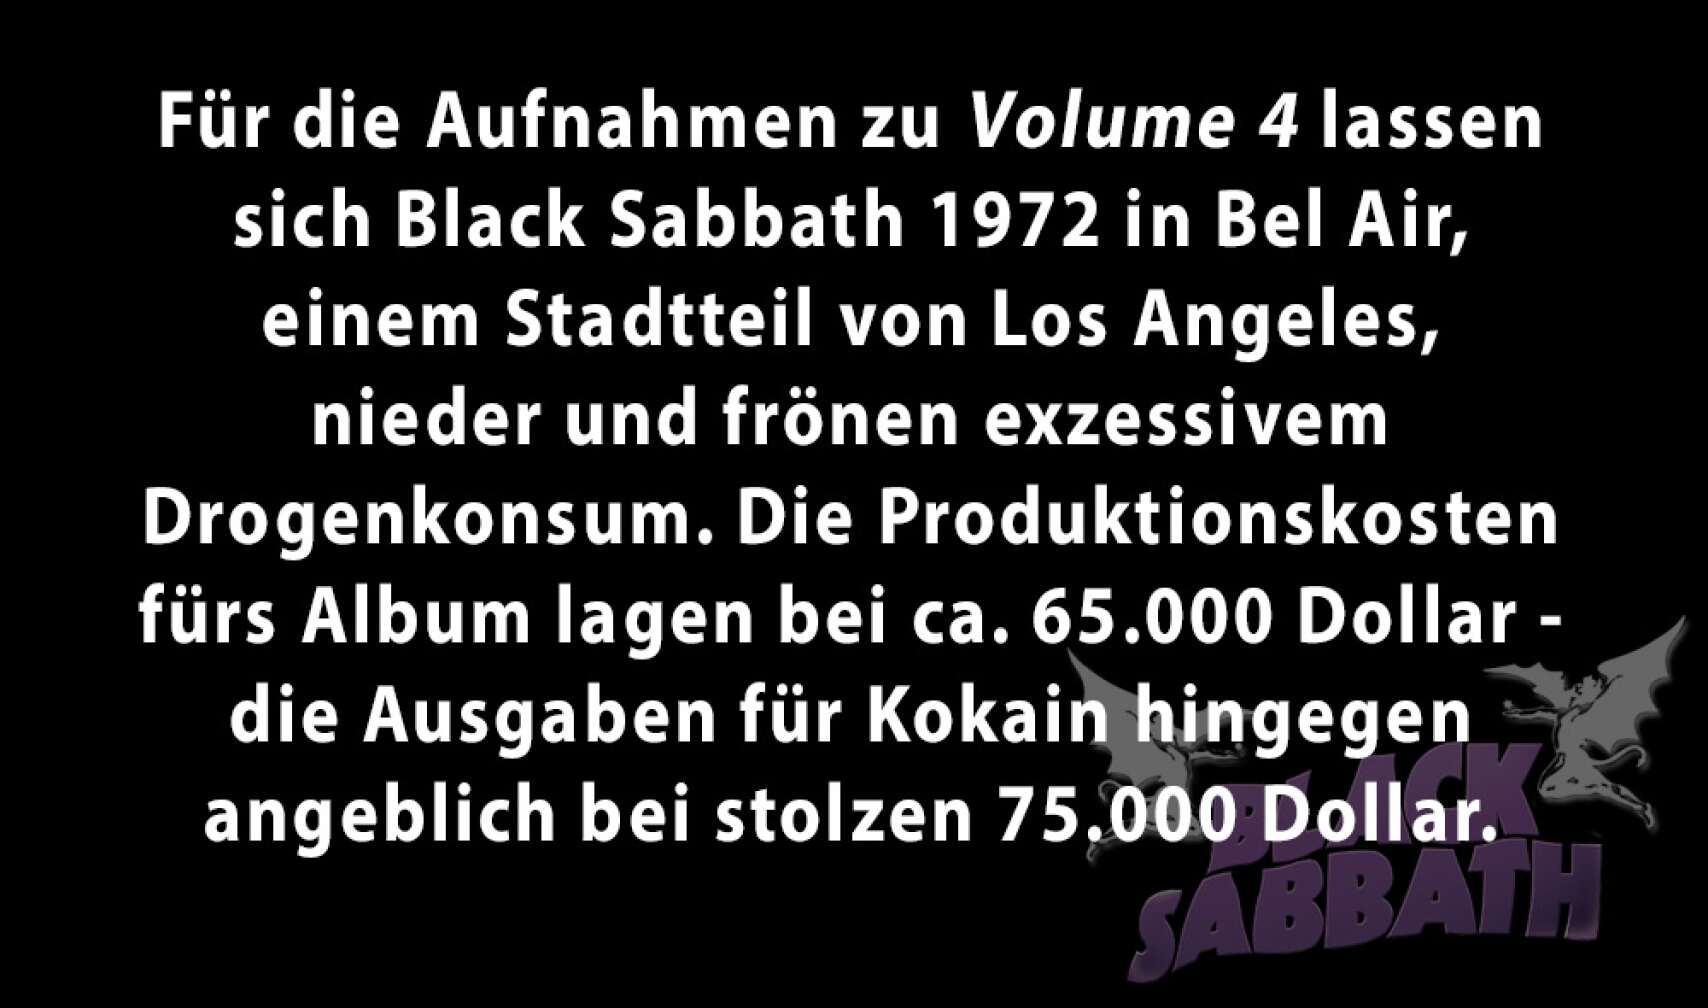 Black Sabbath in Zahlen